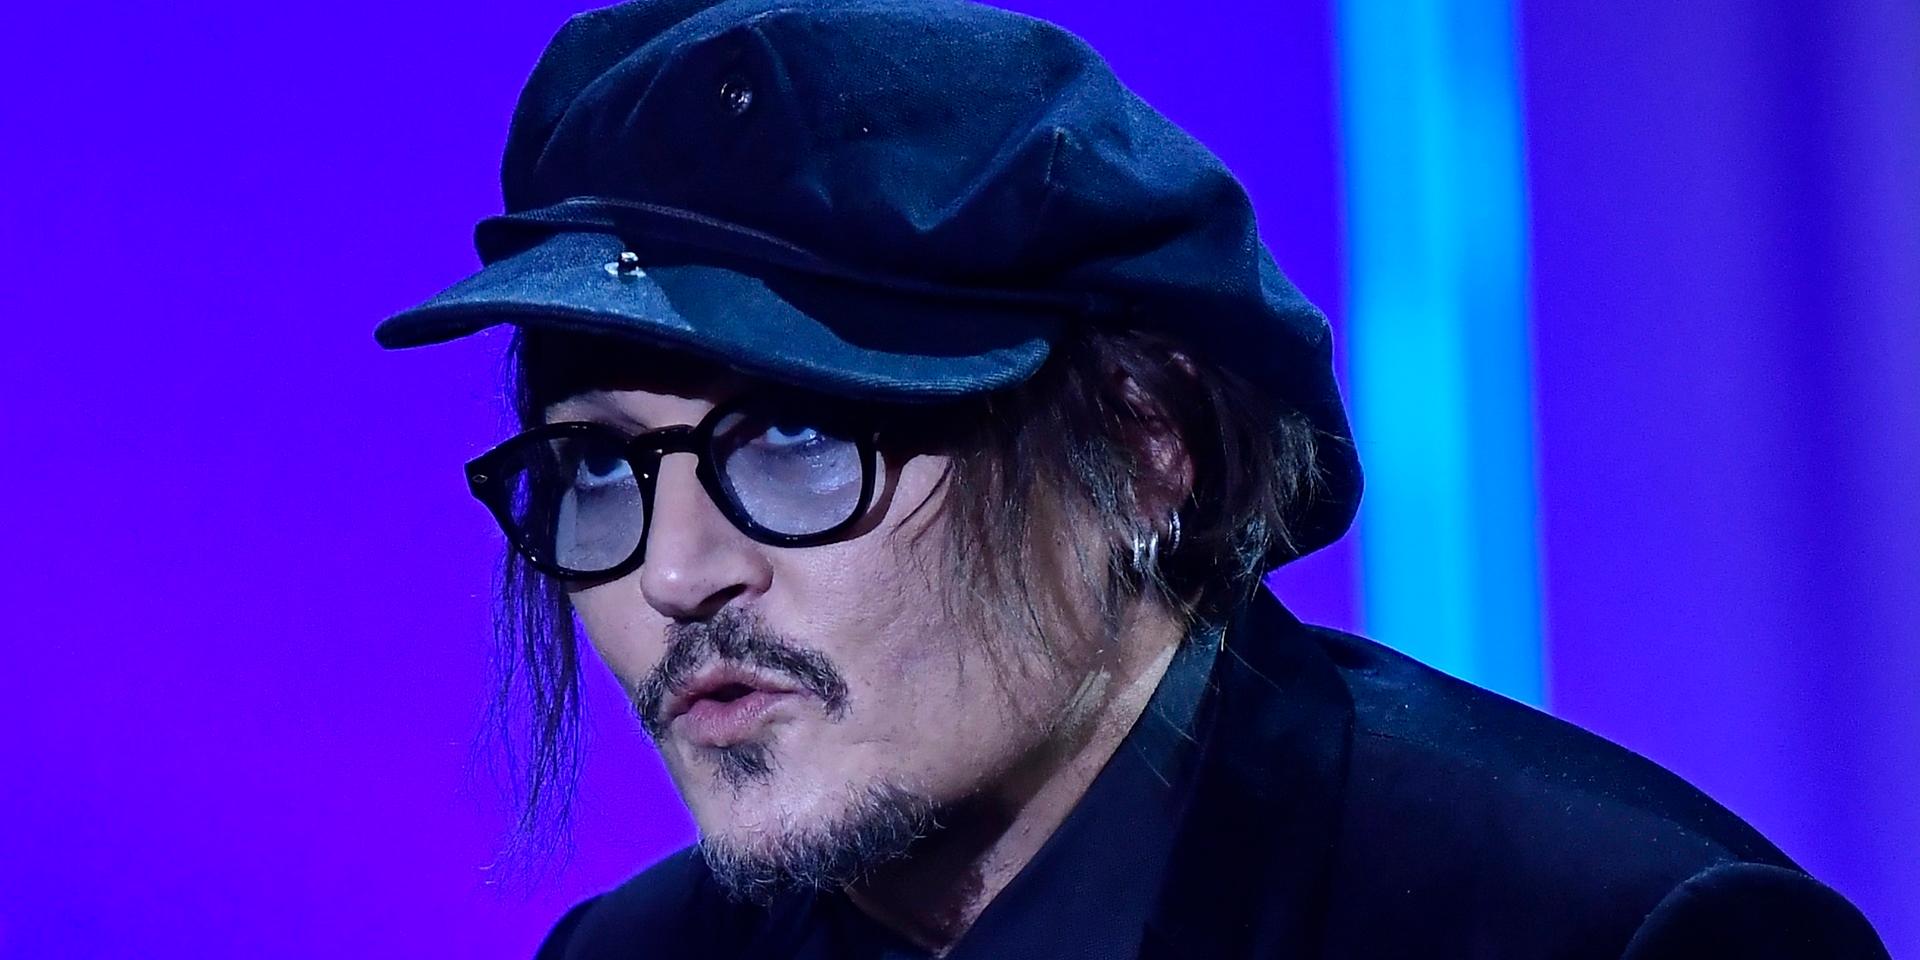 Johnny Depp uttalade sig på filmfestivalen i San Sebastian om dagens kultur med anklagelser om övergrepp.